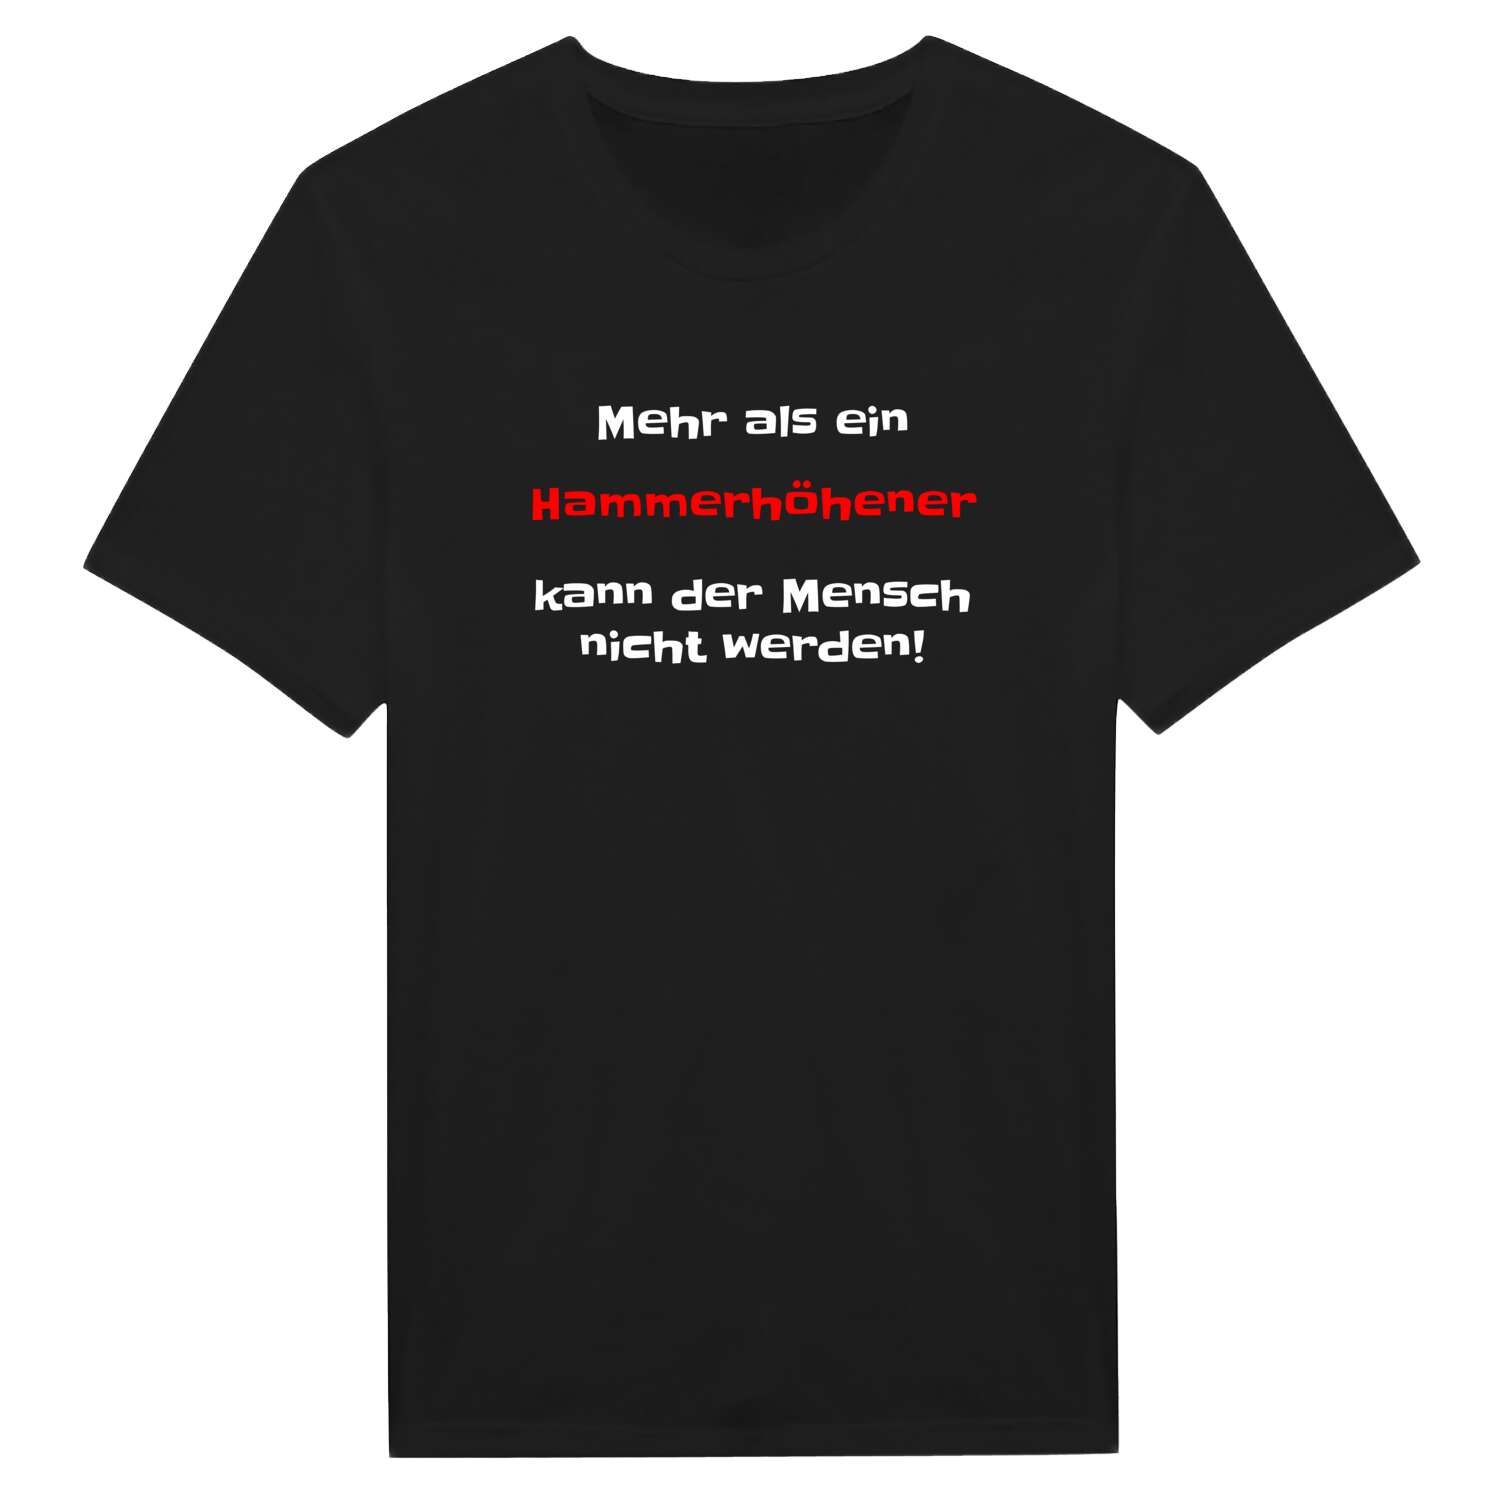 Hammerhöhe T-Shirt »Mehr als ein«